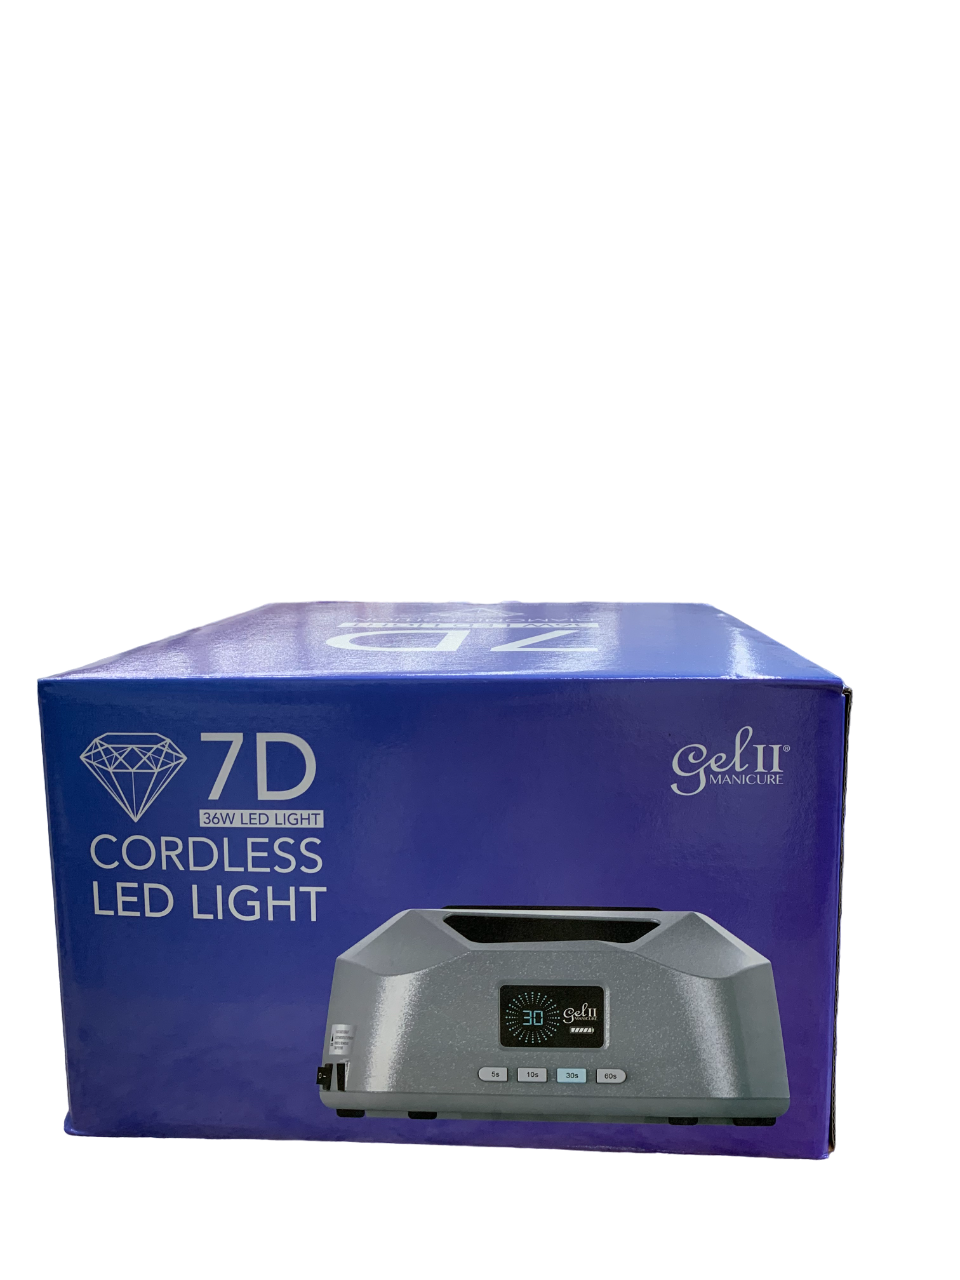 Gel II 7D Cordless LED Light